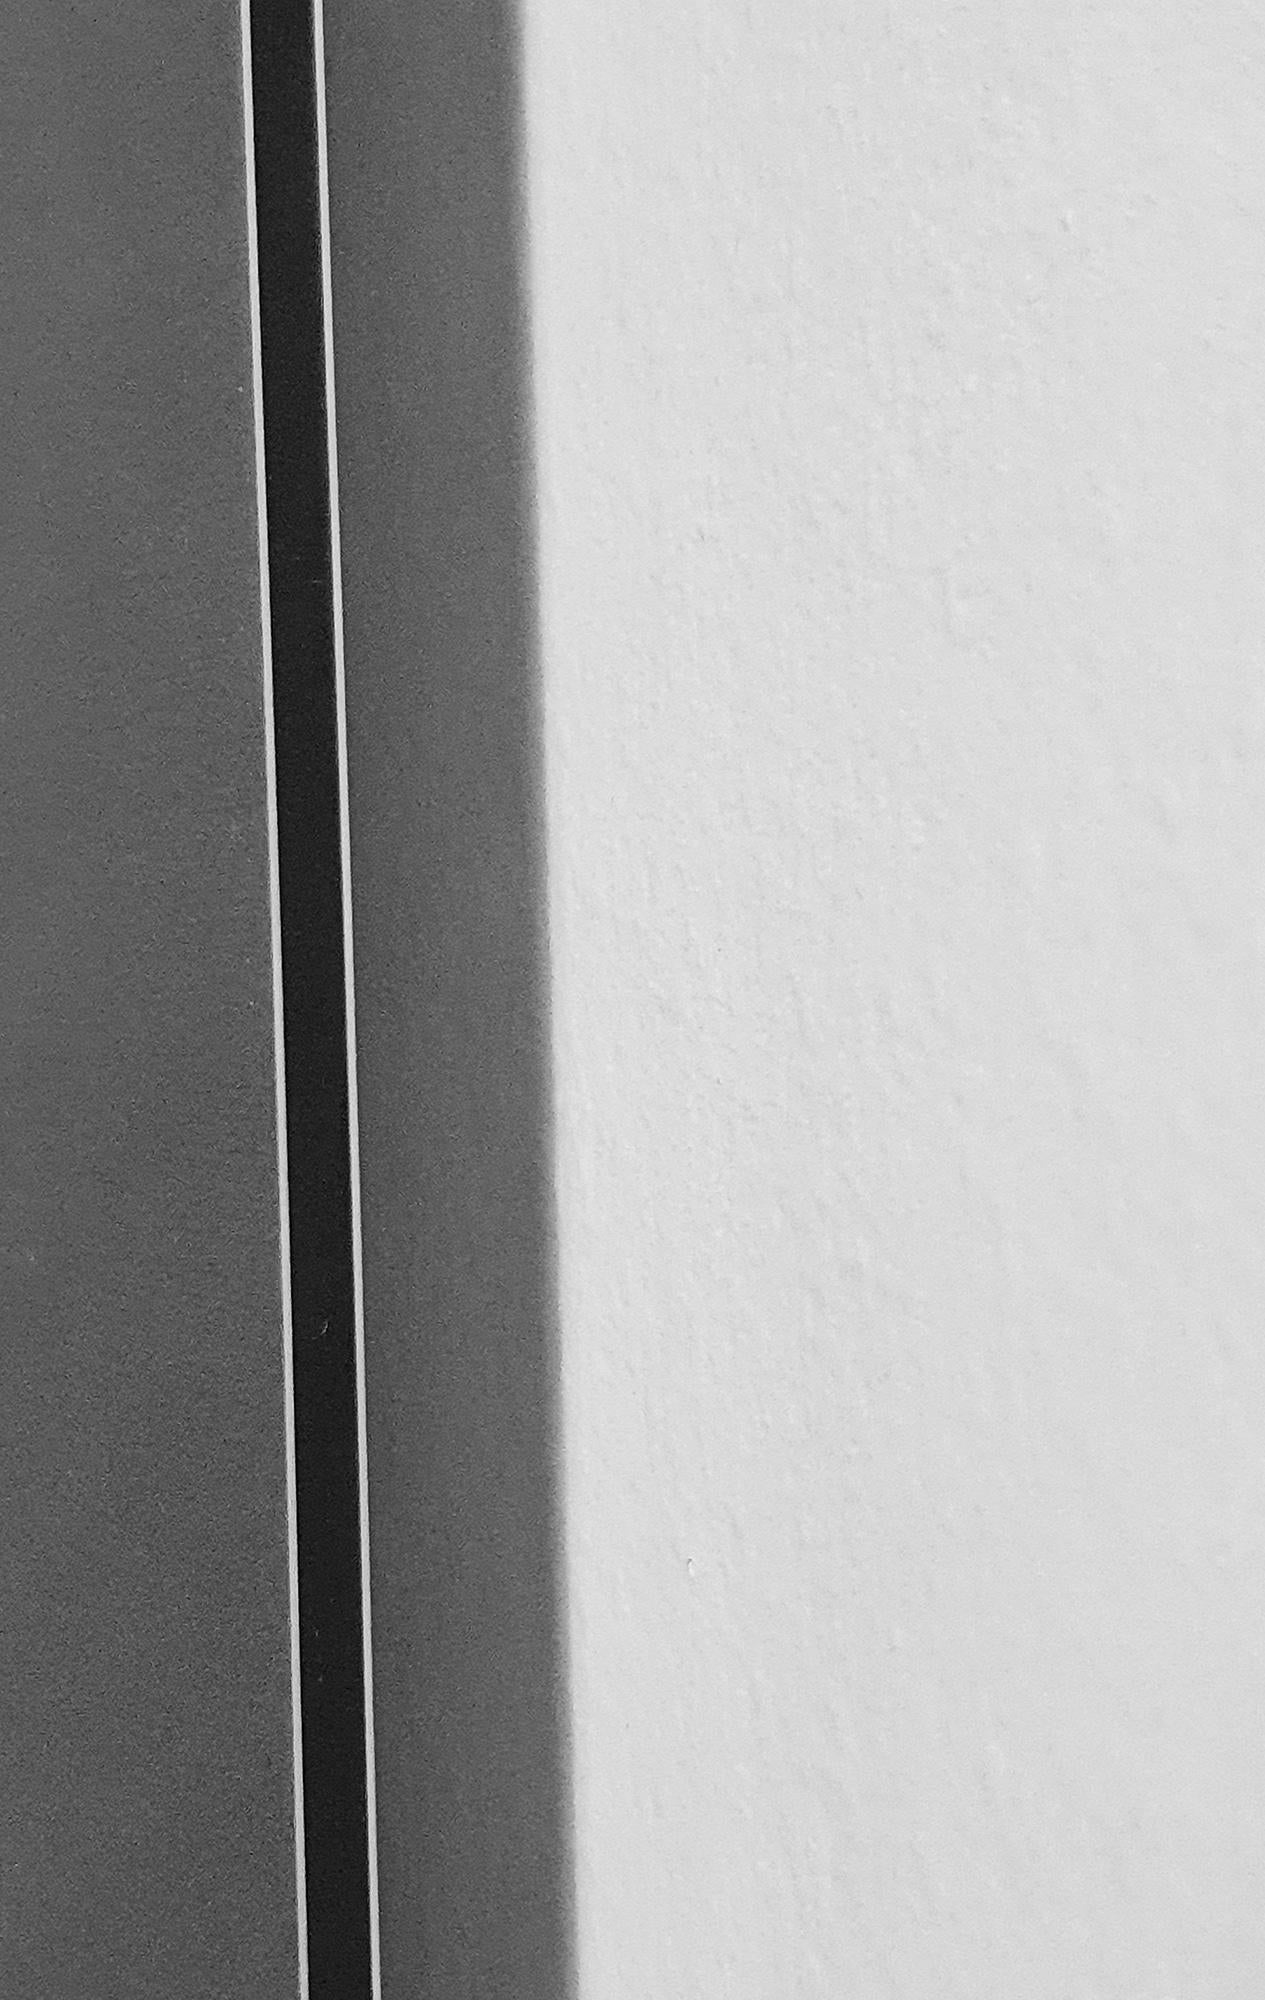 Guggenheim Par Michael Wallner [2018]

édition_limitée
Aluminium brossé
Edition numéro 25
Taille de l'image : H:91 cm x L:68 cm
Taille complète de l'œuvre non encadrée : H:91 cm x L:68 cm x P:0.3cm
Vendu sans cadre
Veuillez noter que les images